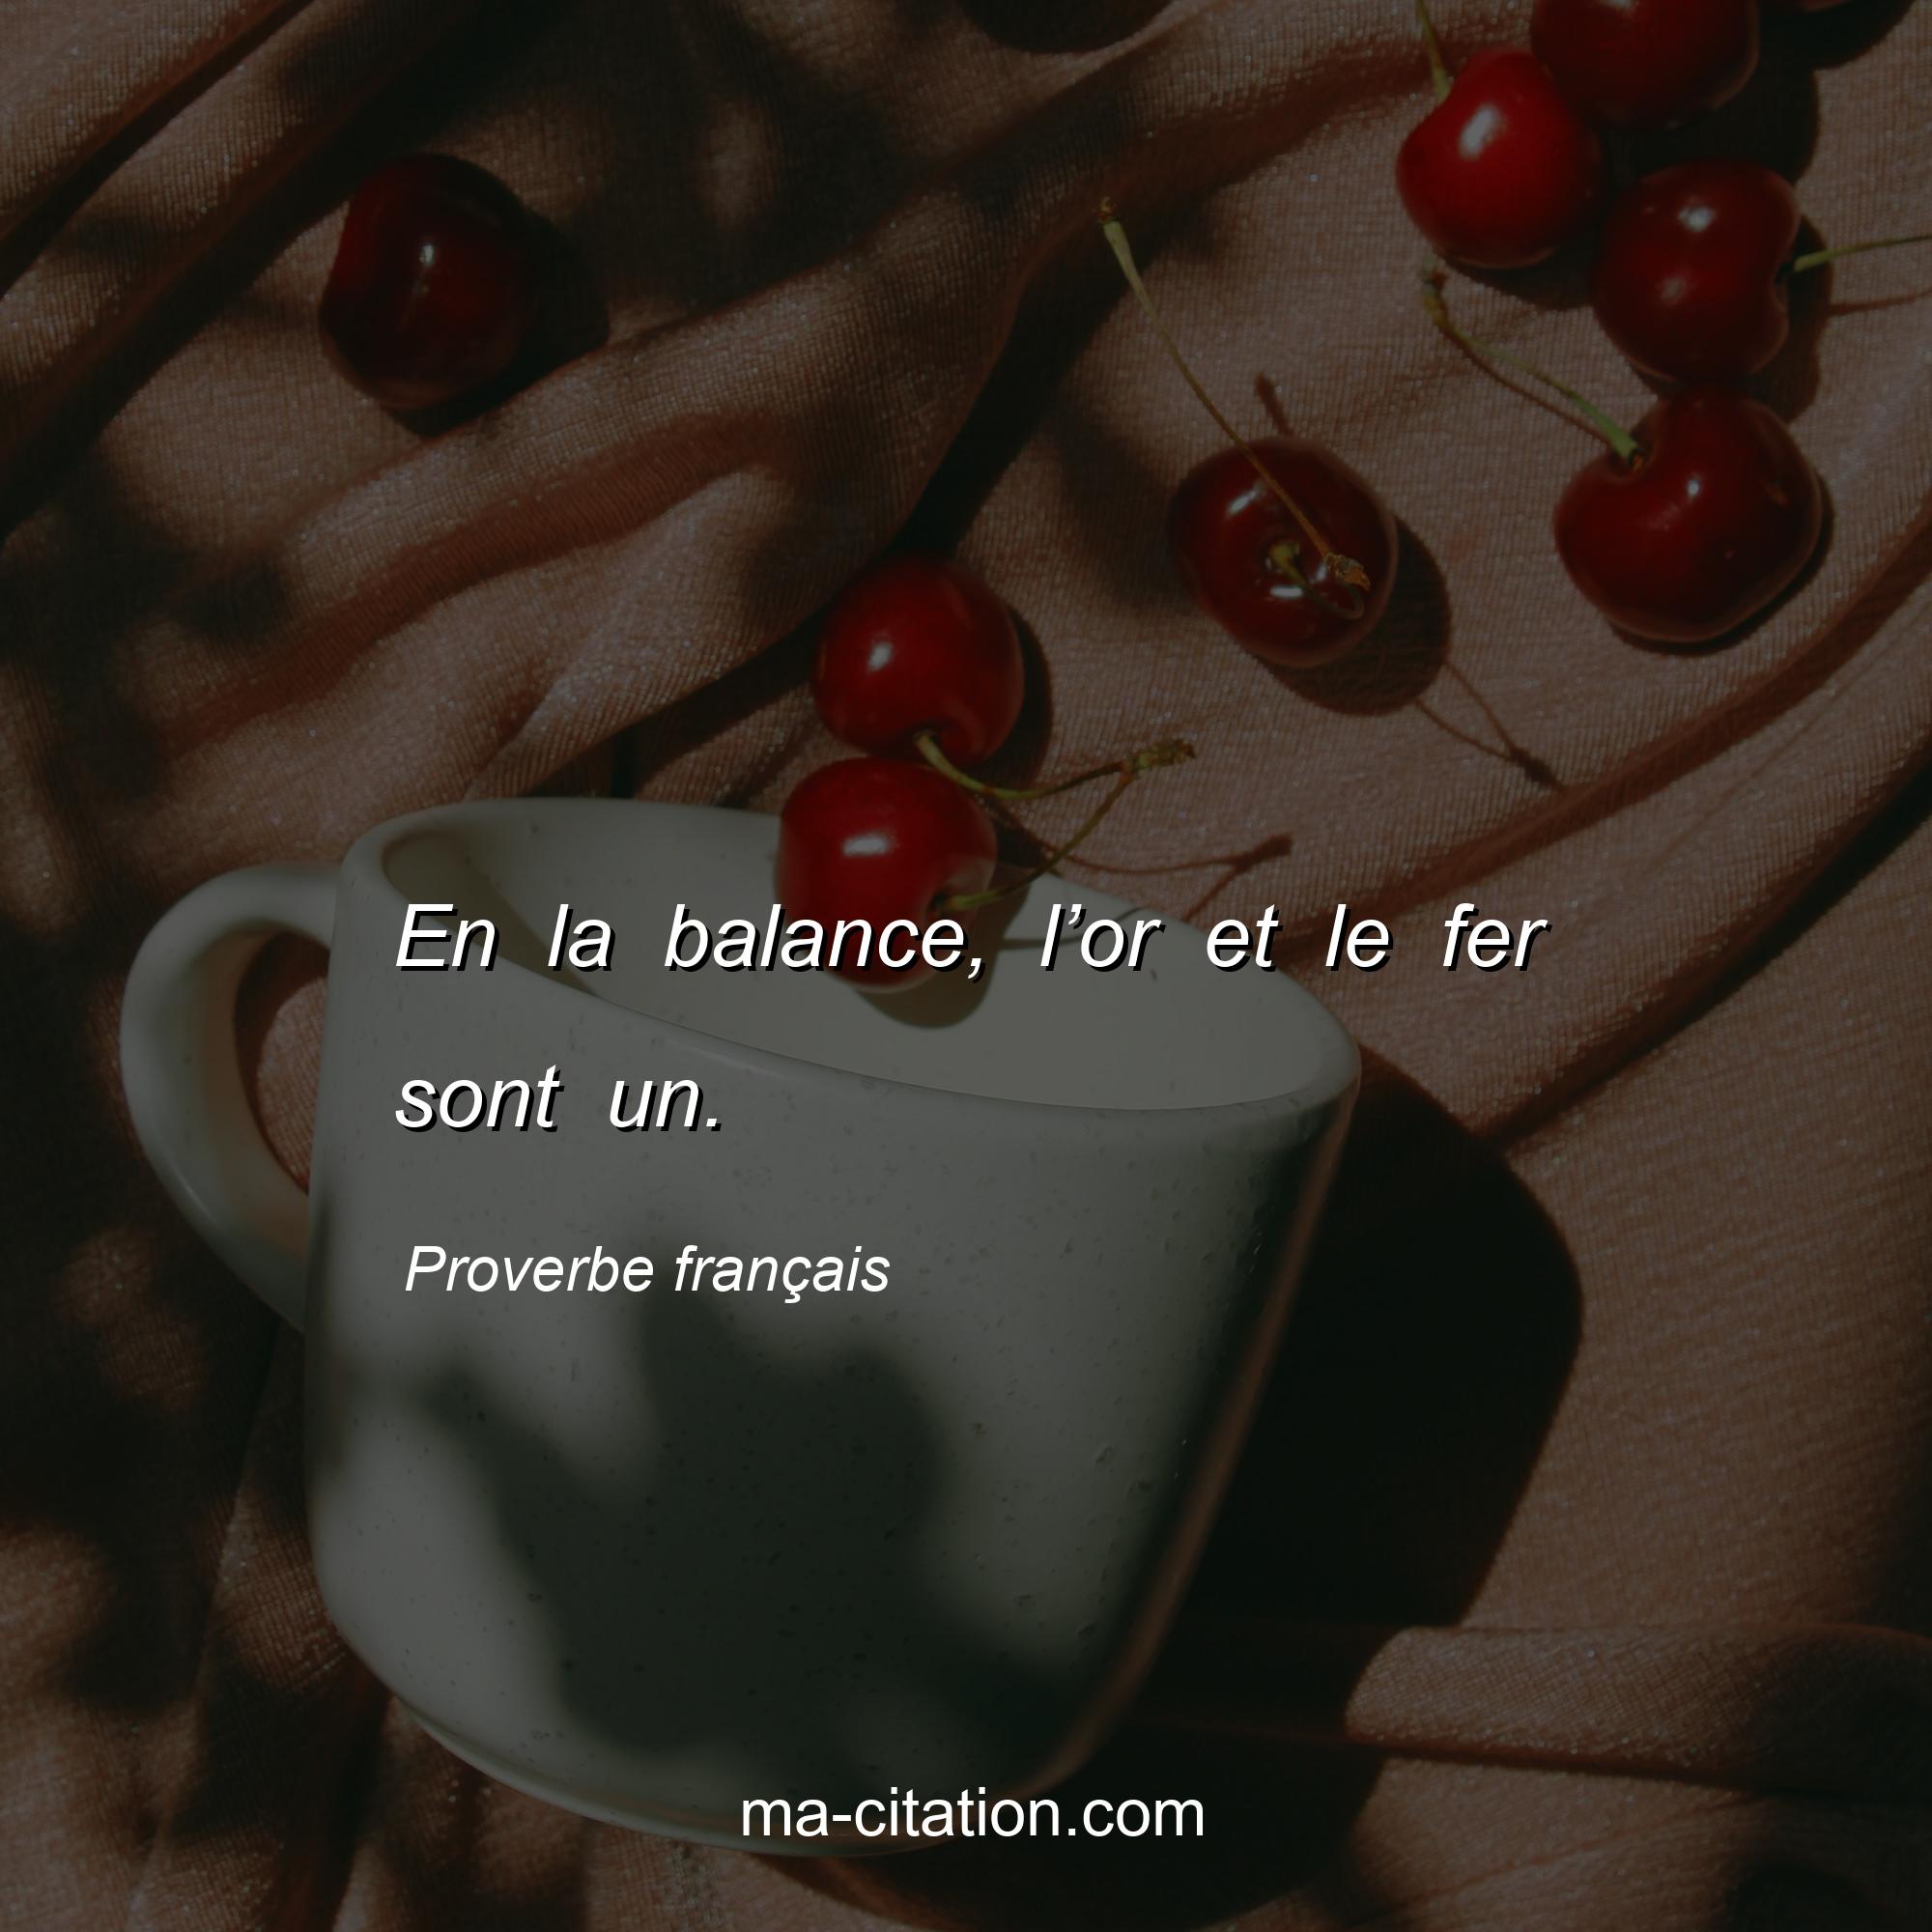 Proverbe français : En la balance, l’or et le fer sont un.